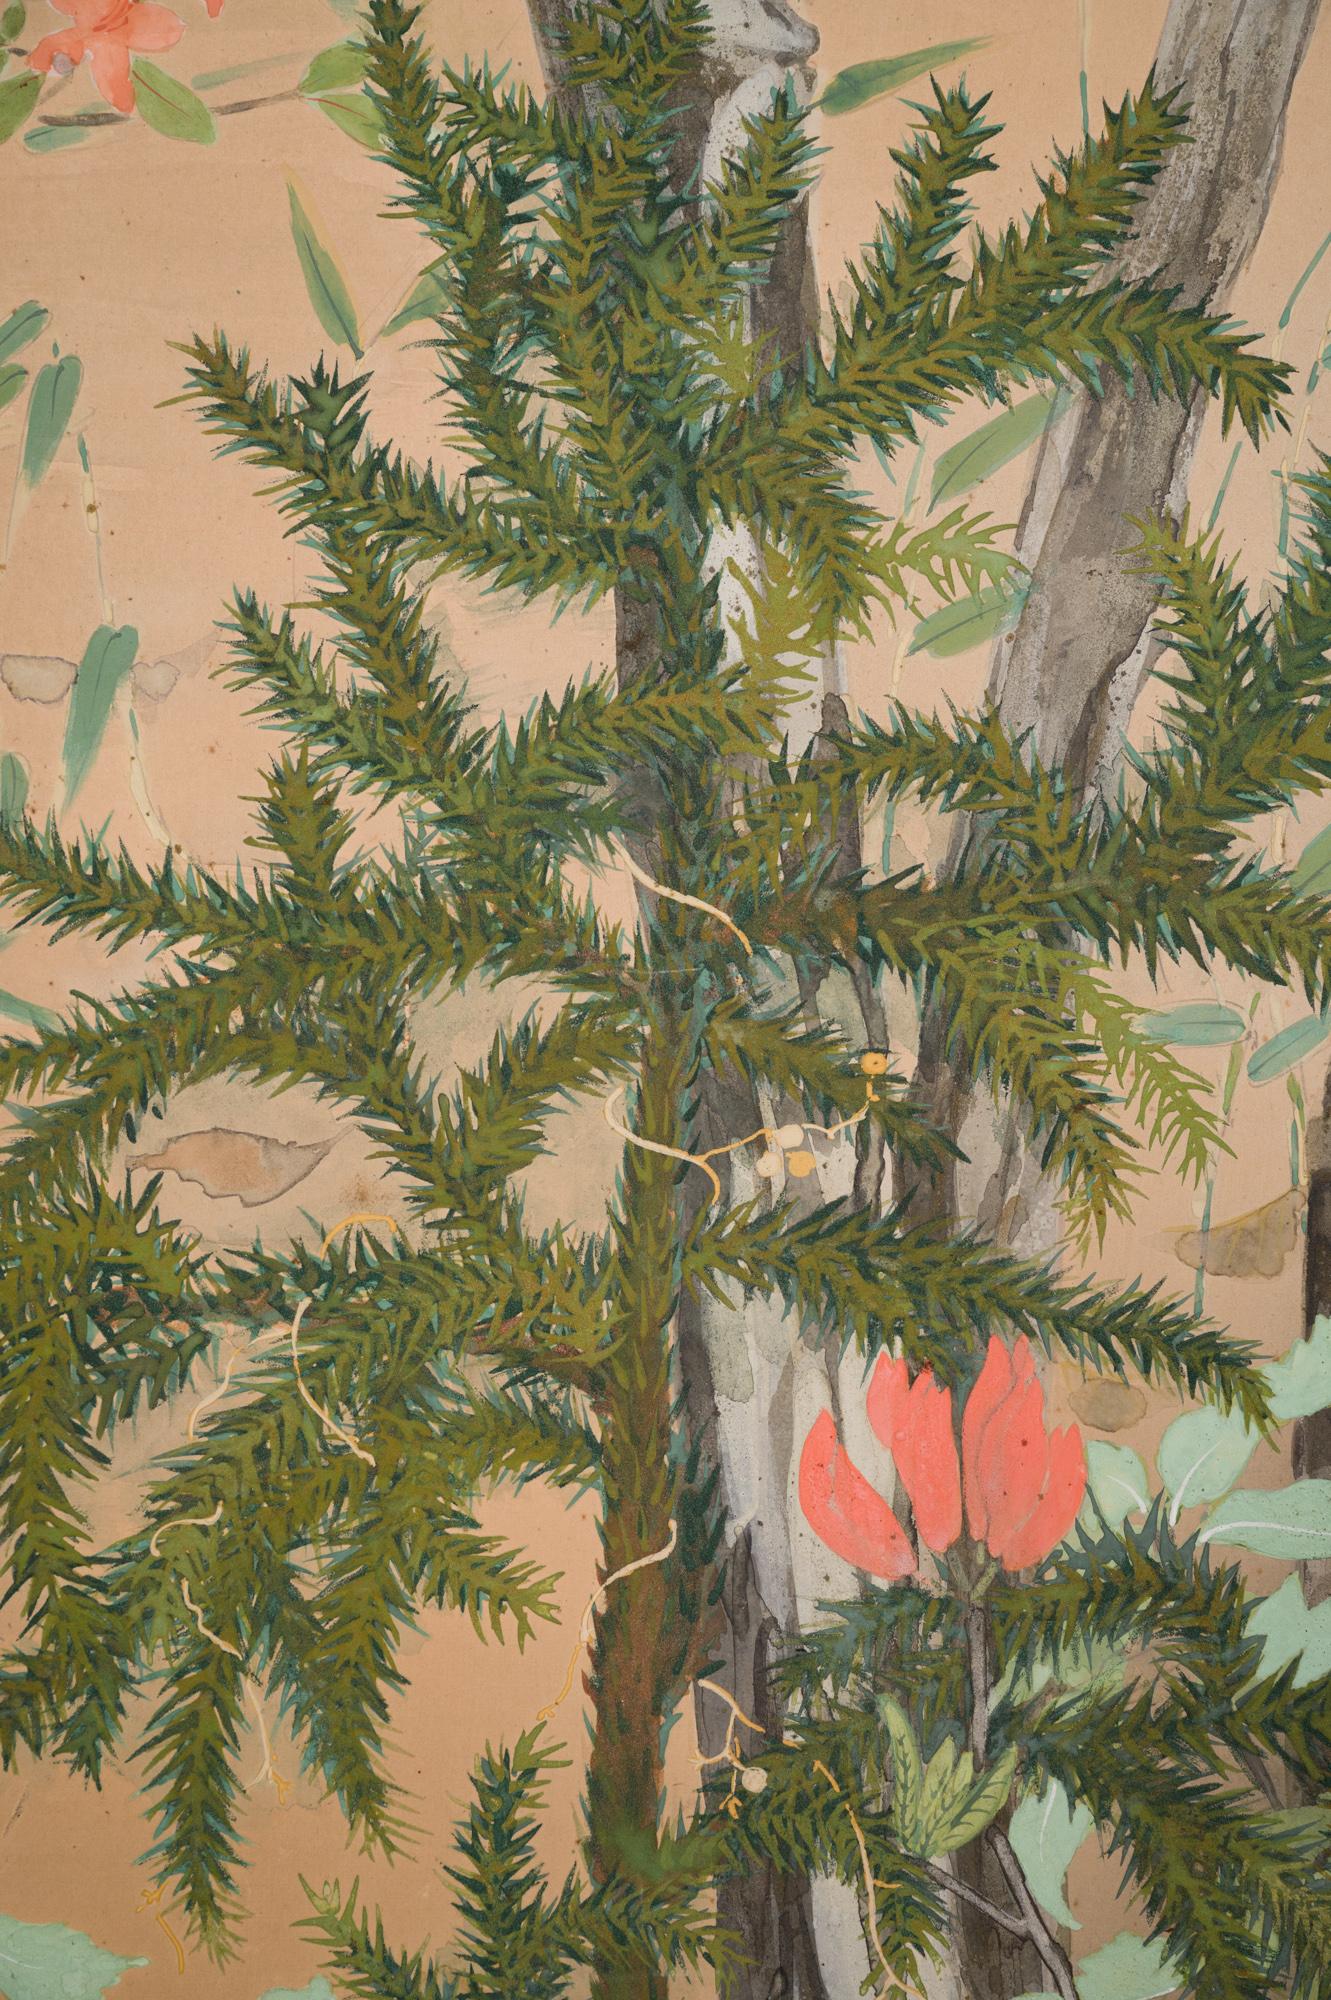 De beaux arbres avec des pins et des azelea. Pigment minéral sur papier. Période Showa (1926-1989).